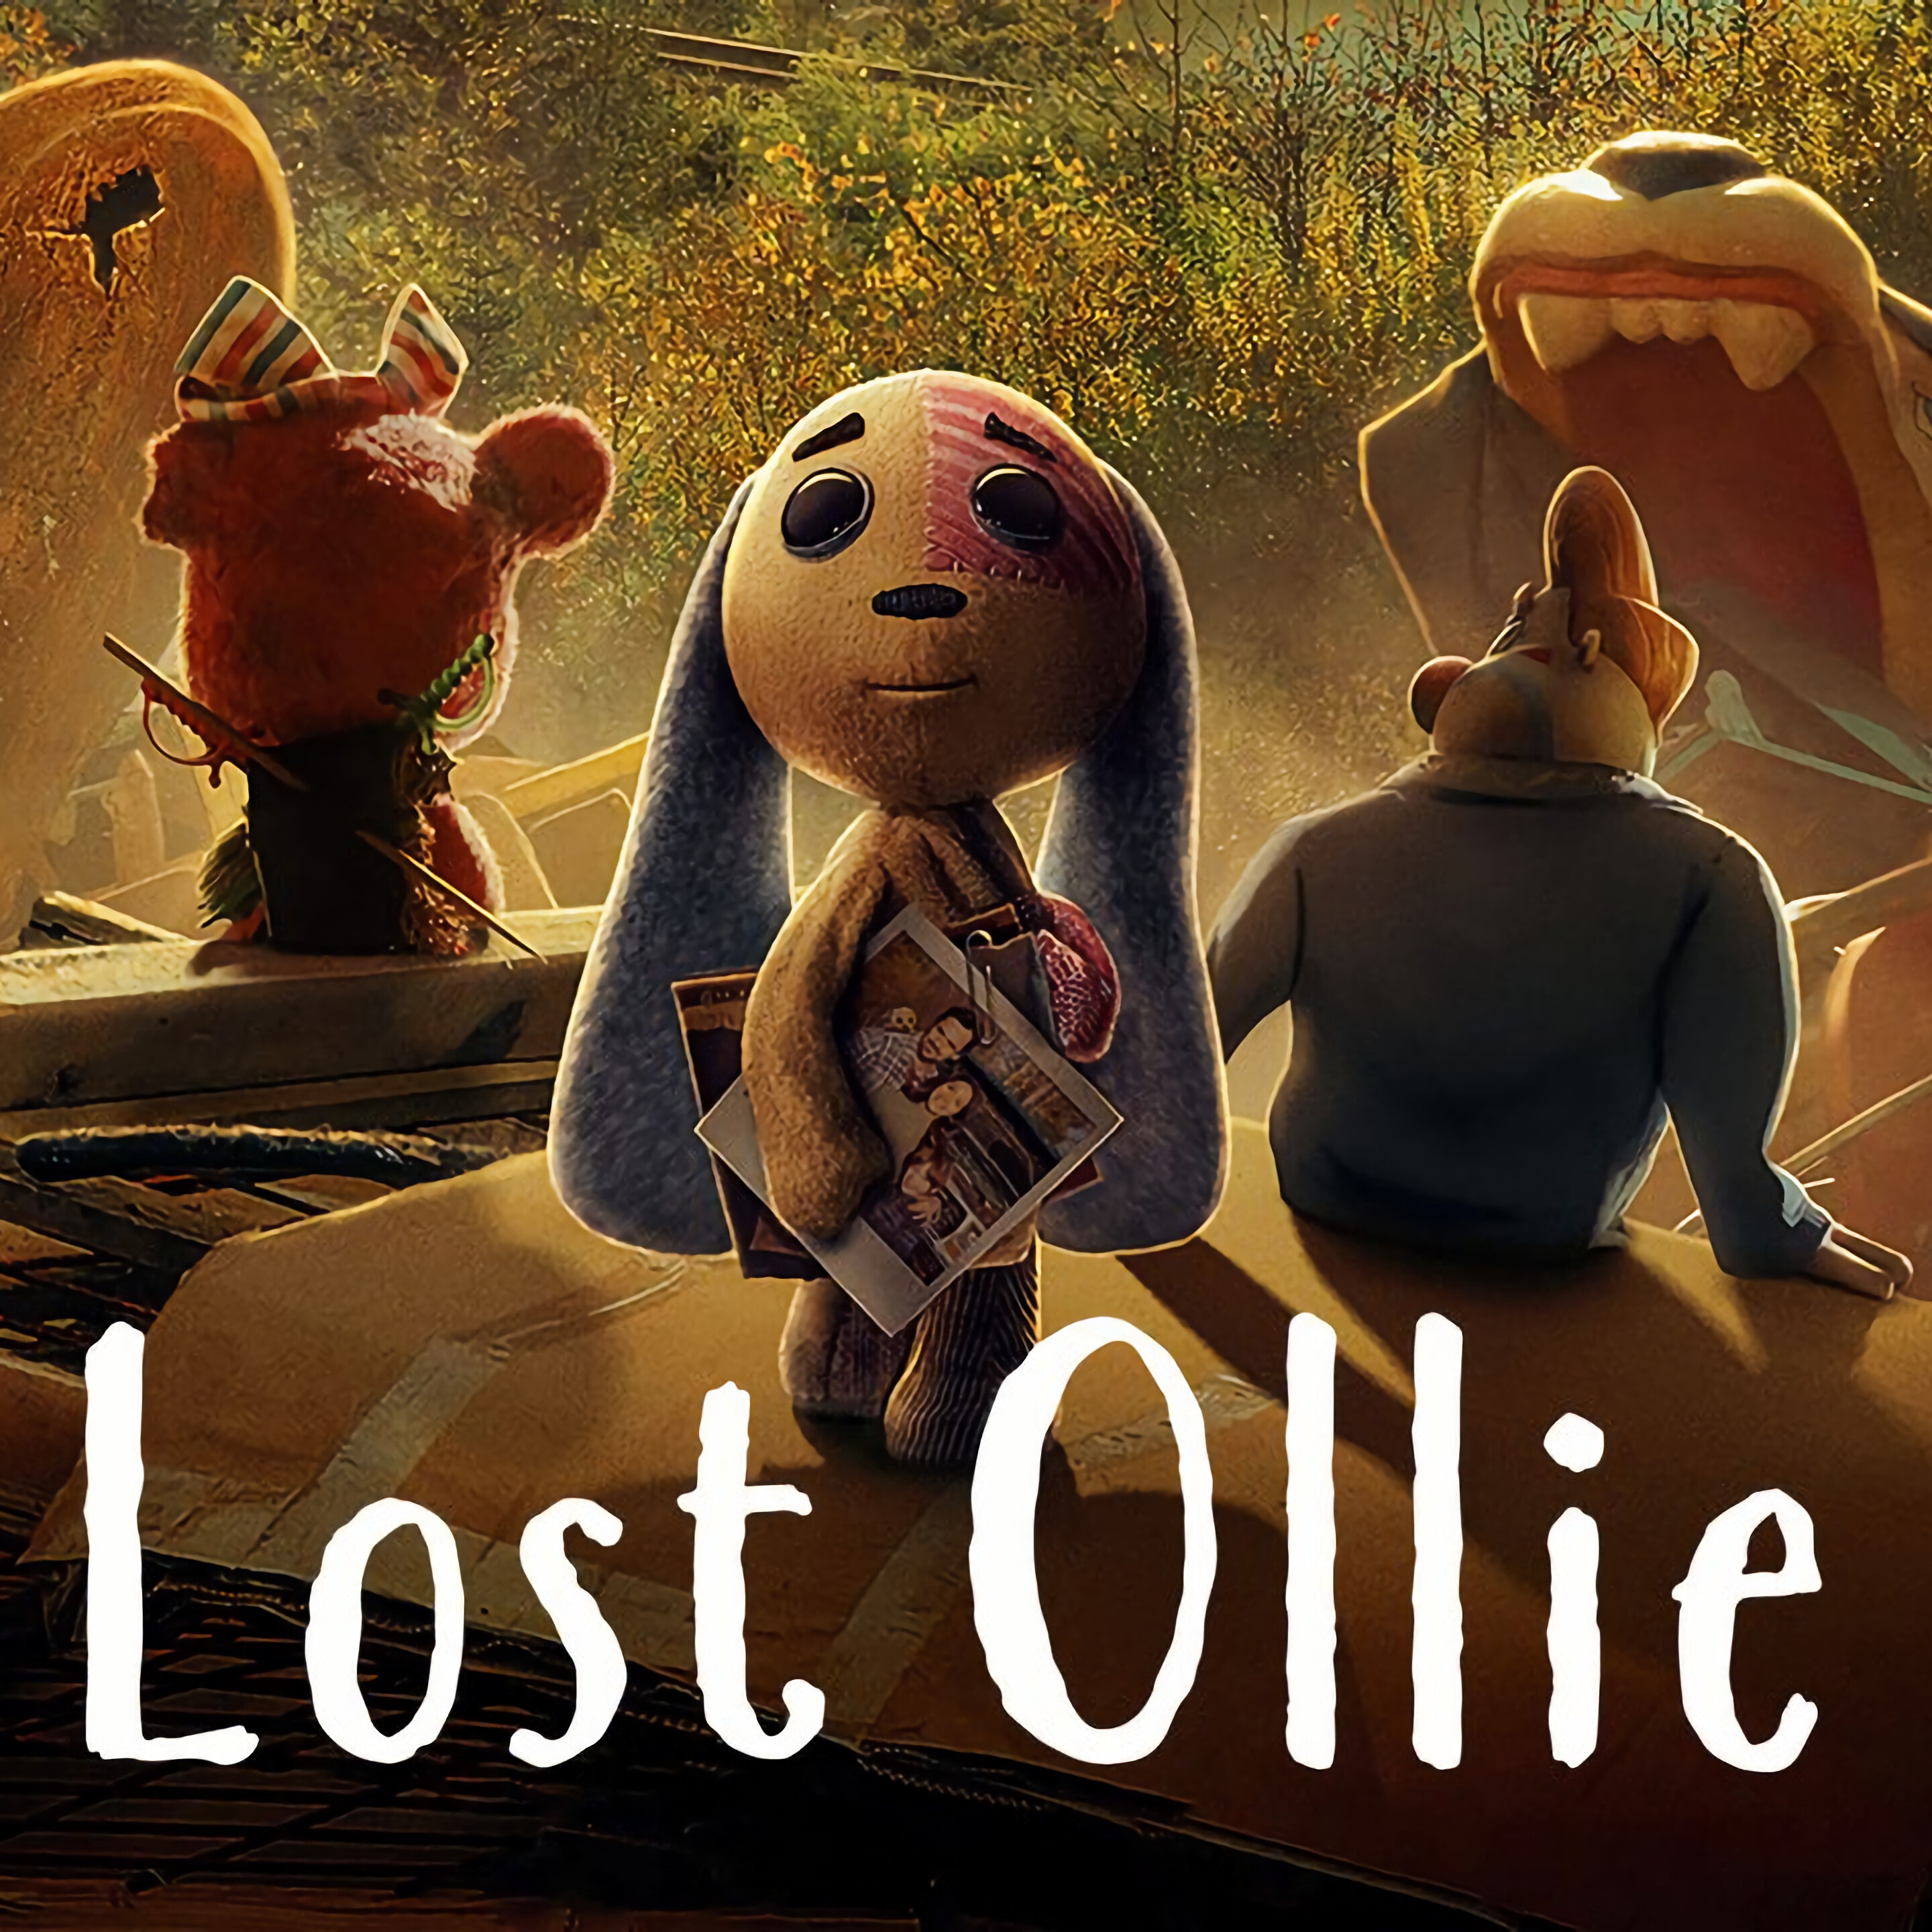 Lost Ollie series, Enchanting adventures, Emotional depth, Inspiring storytelling, 2880x2880 4K Phone